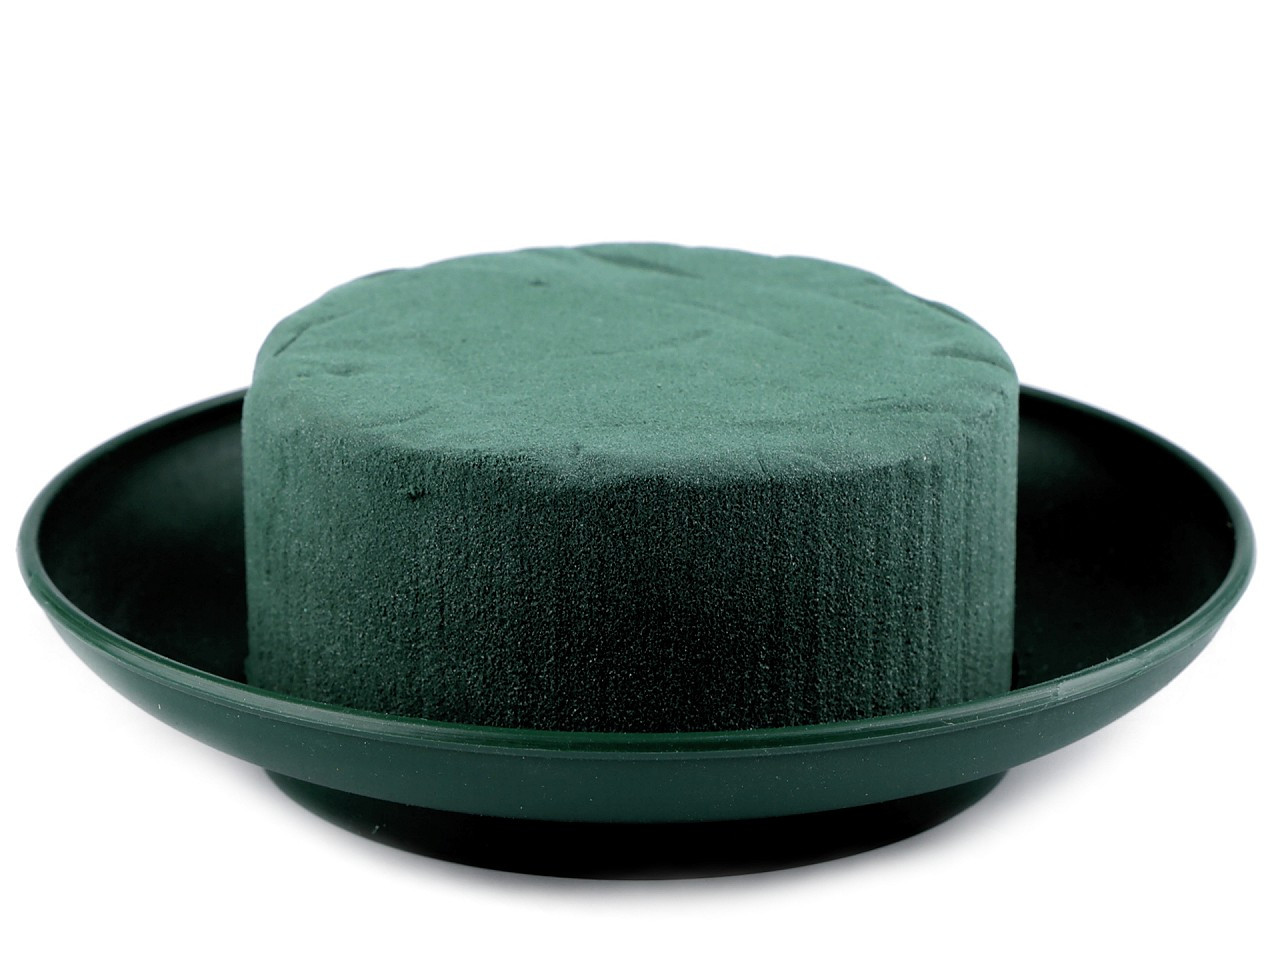 Aranžovací hmota Florex s miskou Ø19 cm, barva 2 zelená